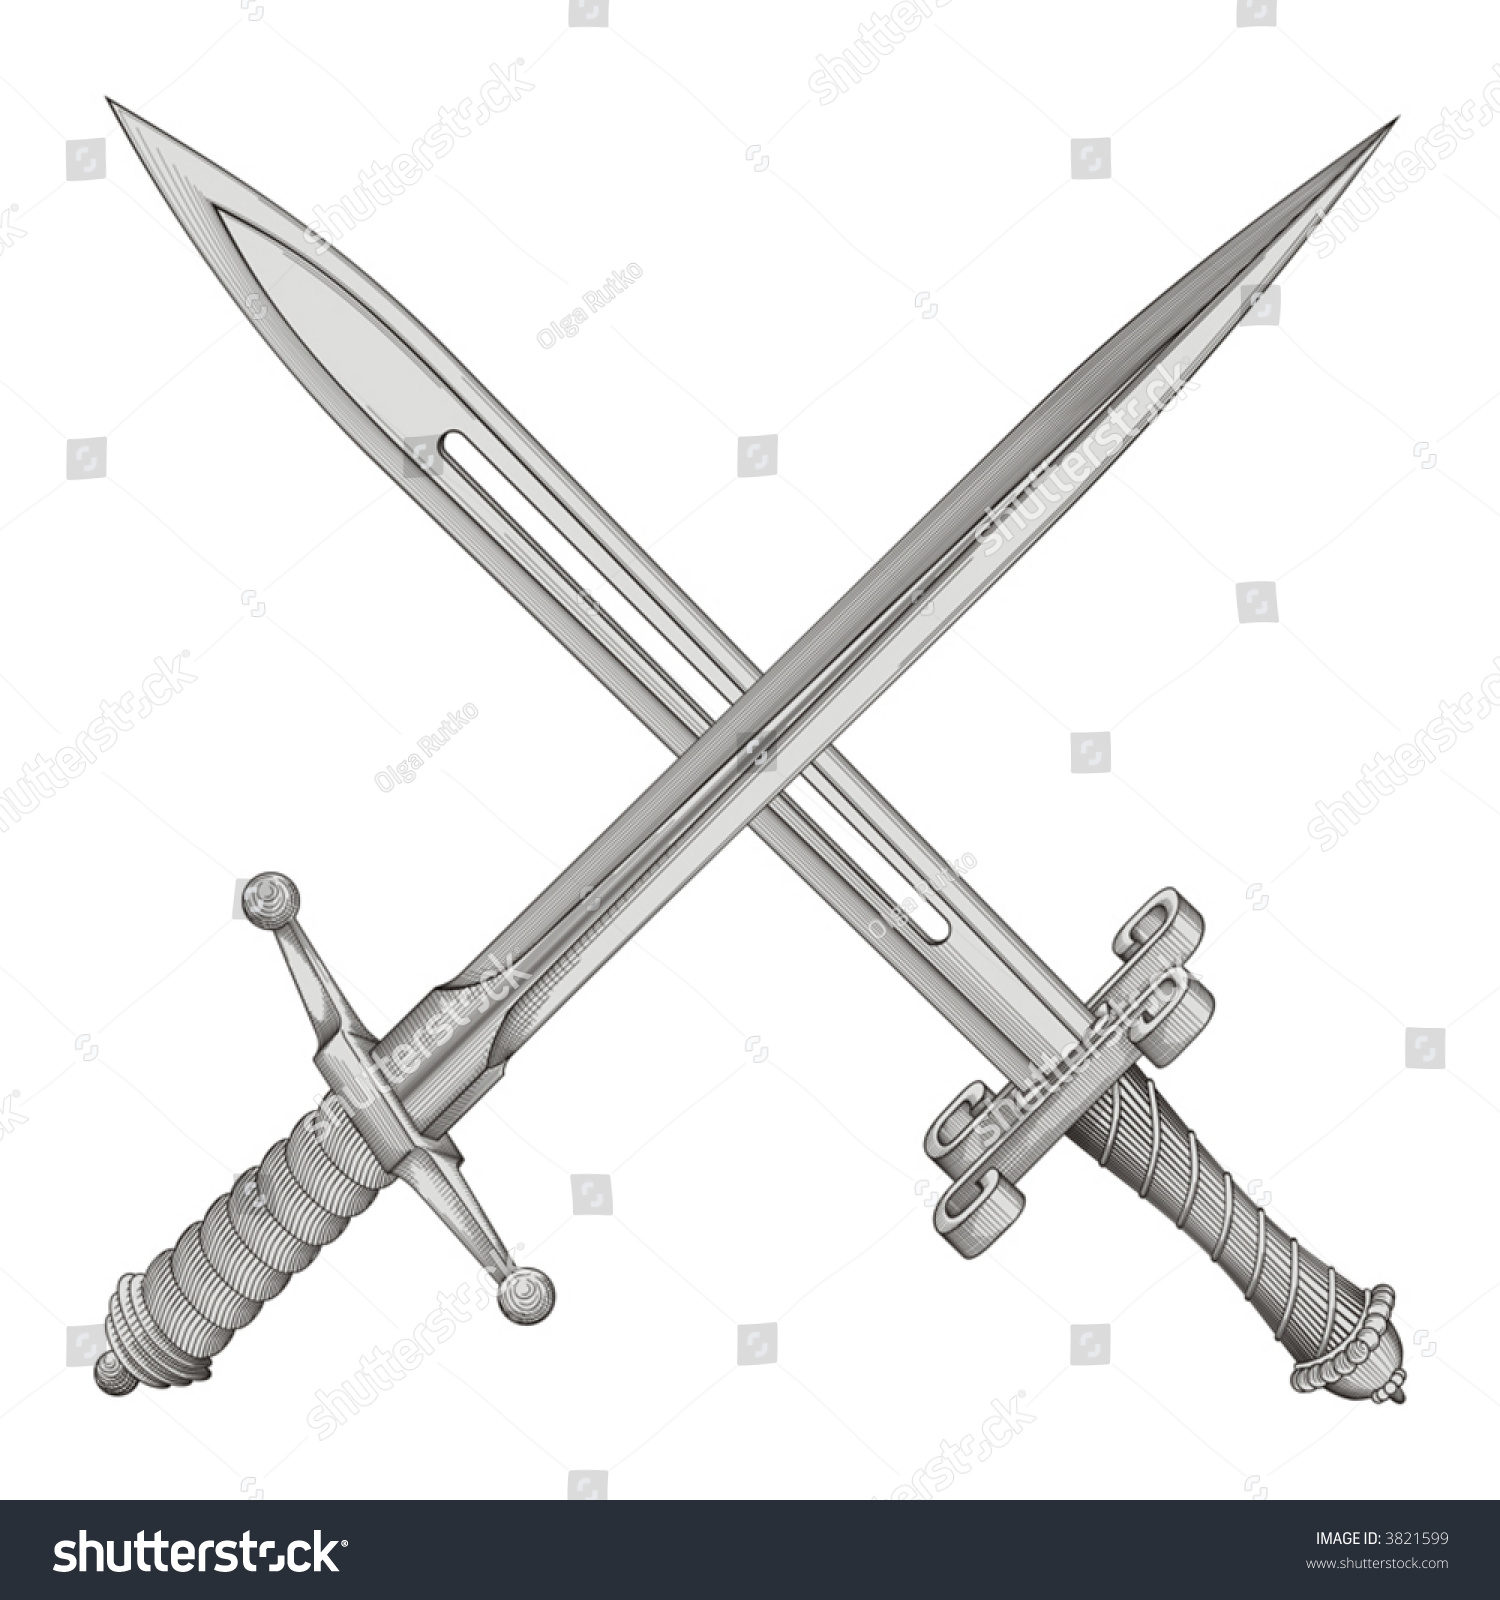 Two Swords Vector - 3821599 : Shutterstock